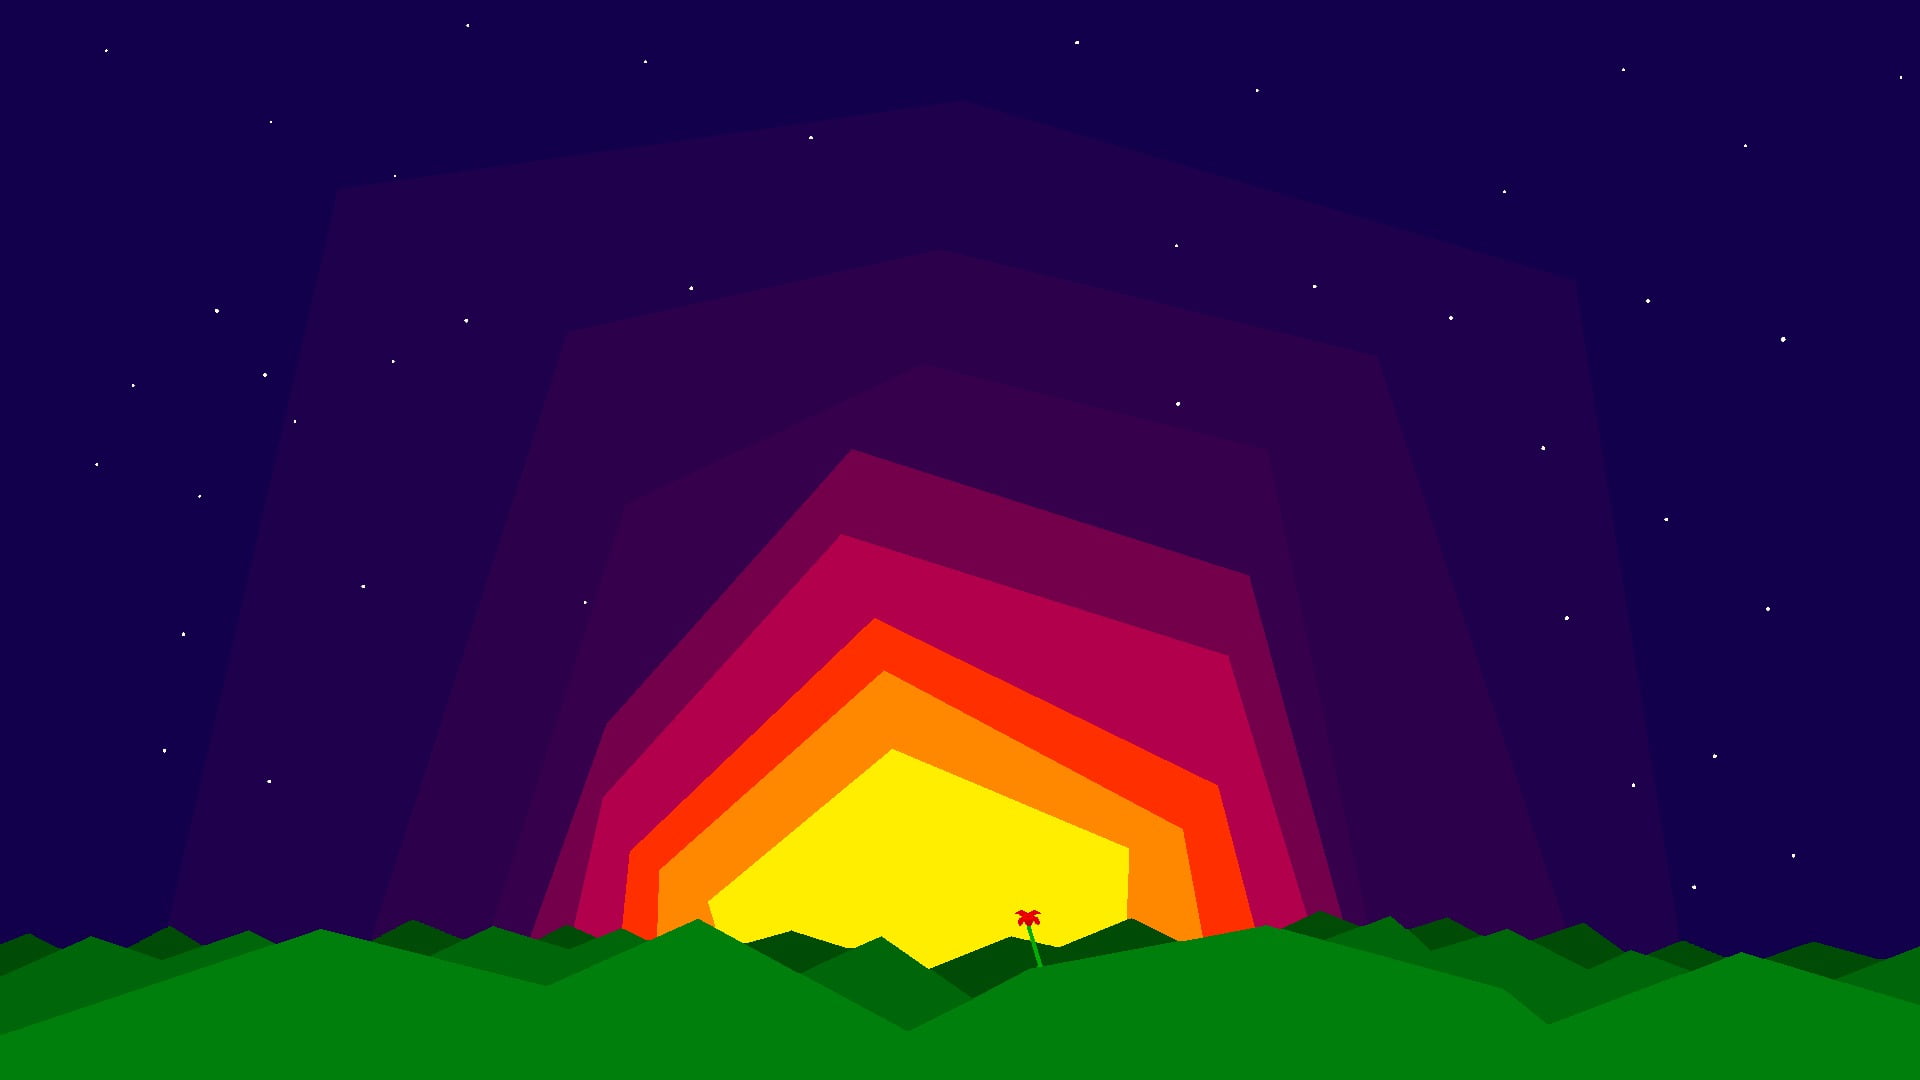 pixel art, 8-bit, illuminated, red, lighting equipment, shape